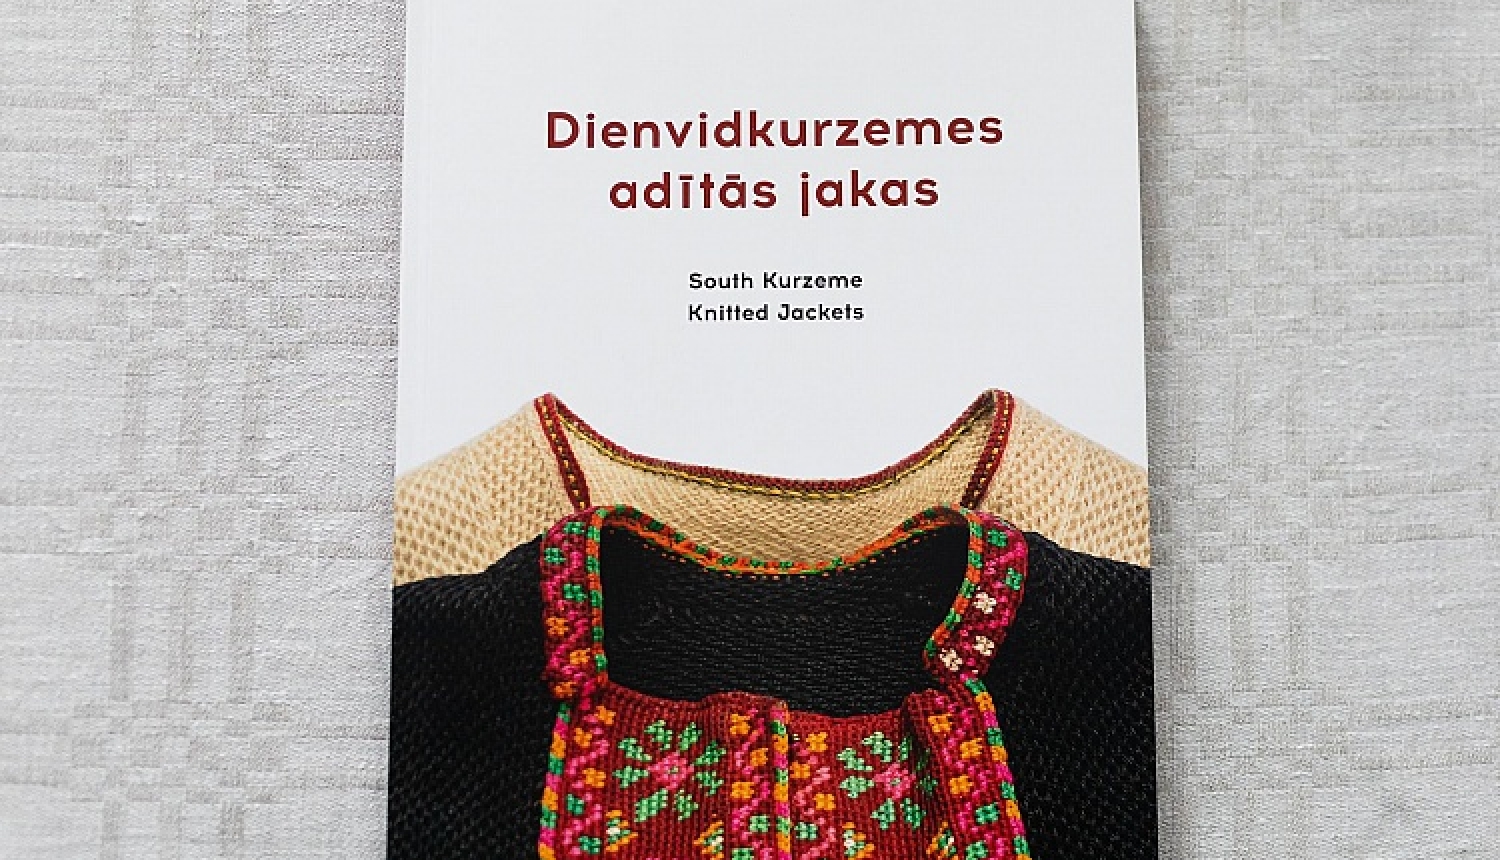 Latvijas Nacionālais kultūras centrs izdod grāmatu “Dienvidkurzemes adītās jakas”